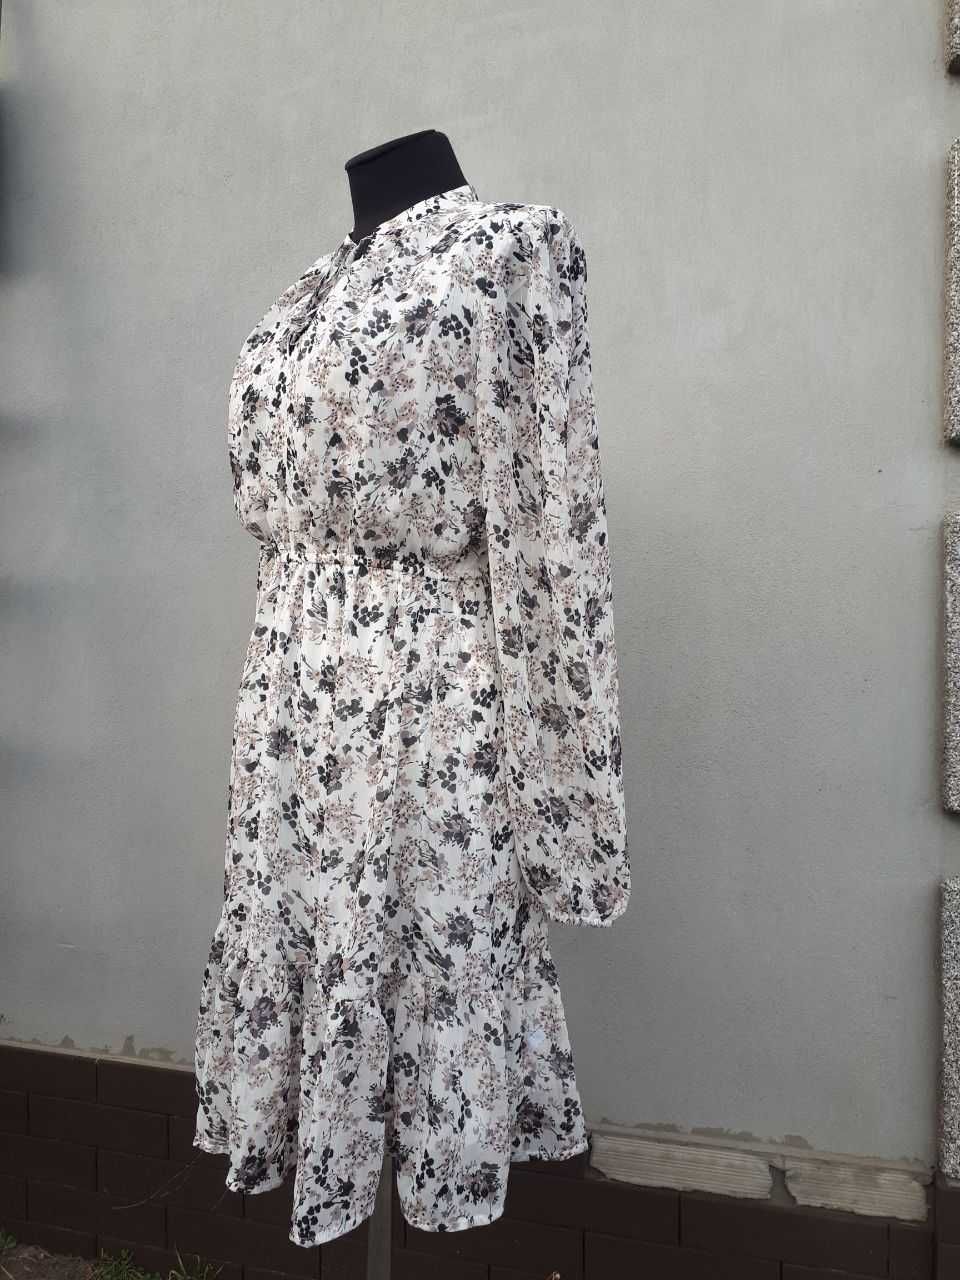 Брендовое женское платье цвета айвори.Сниму видео товара.